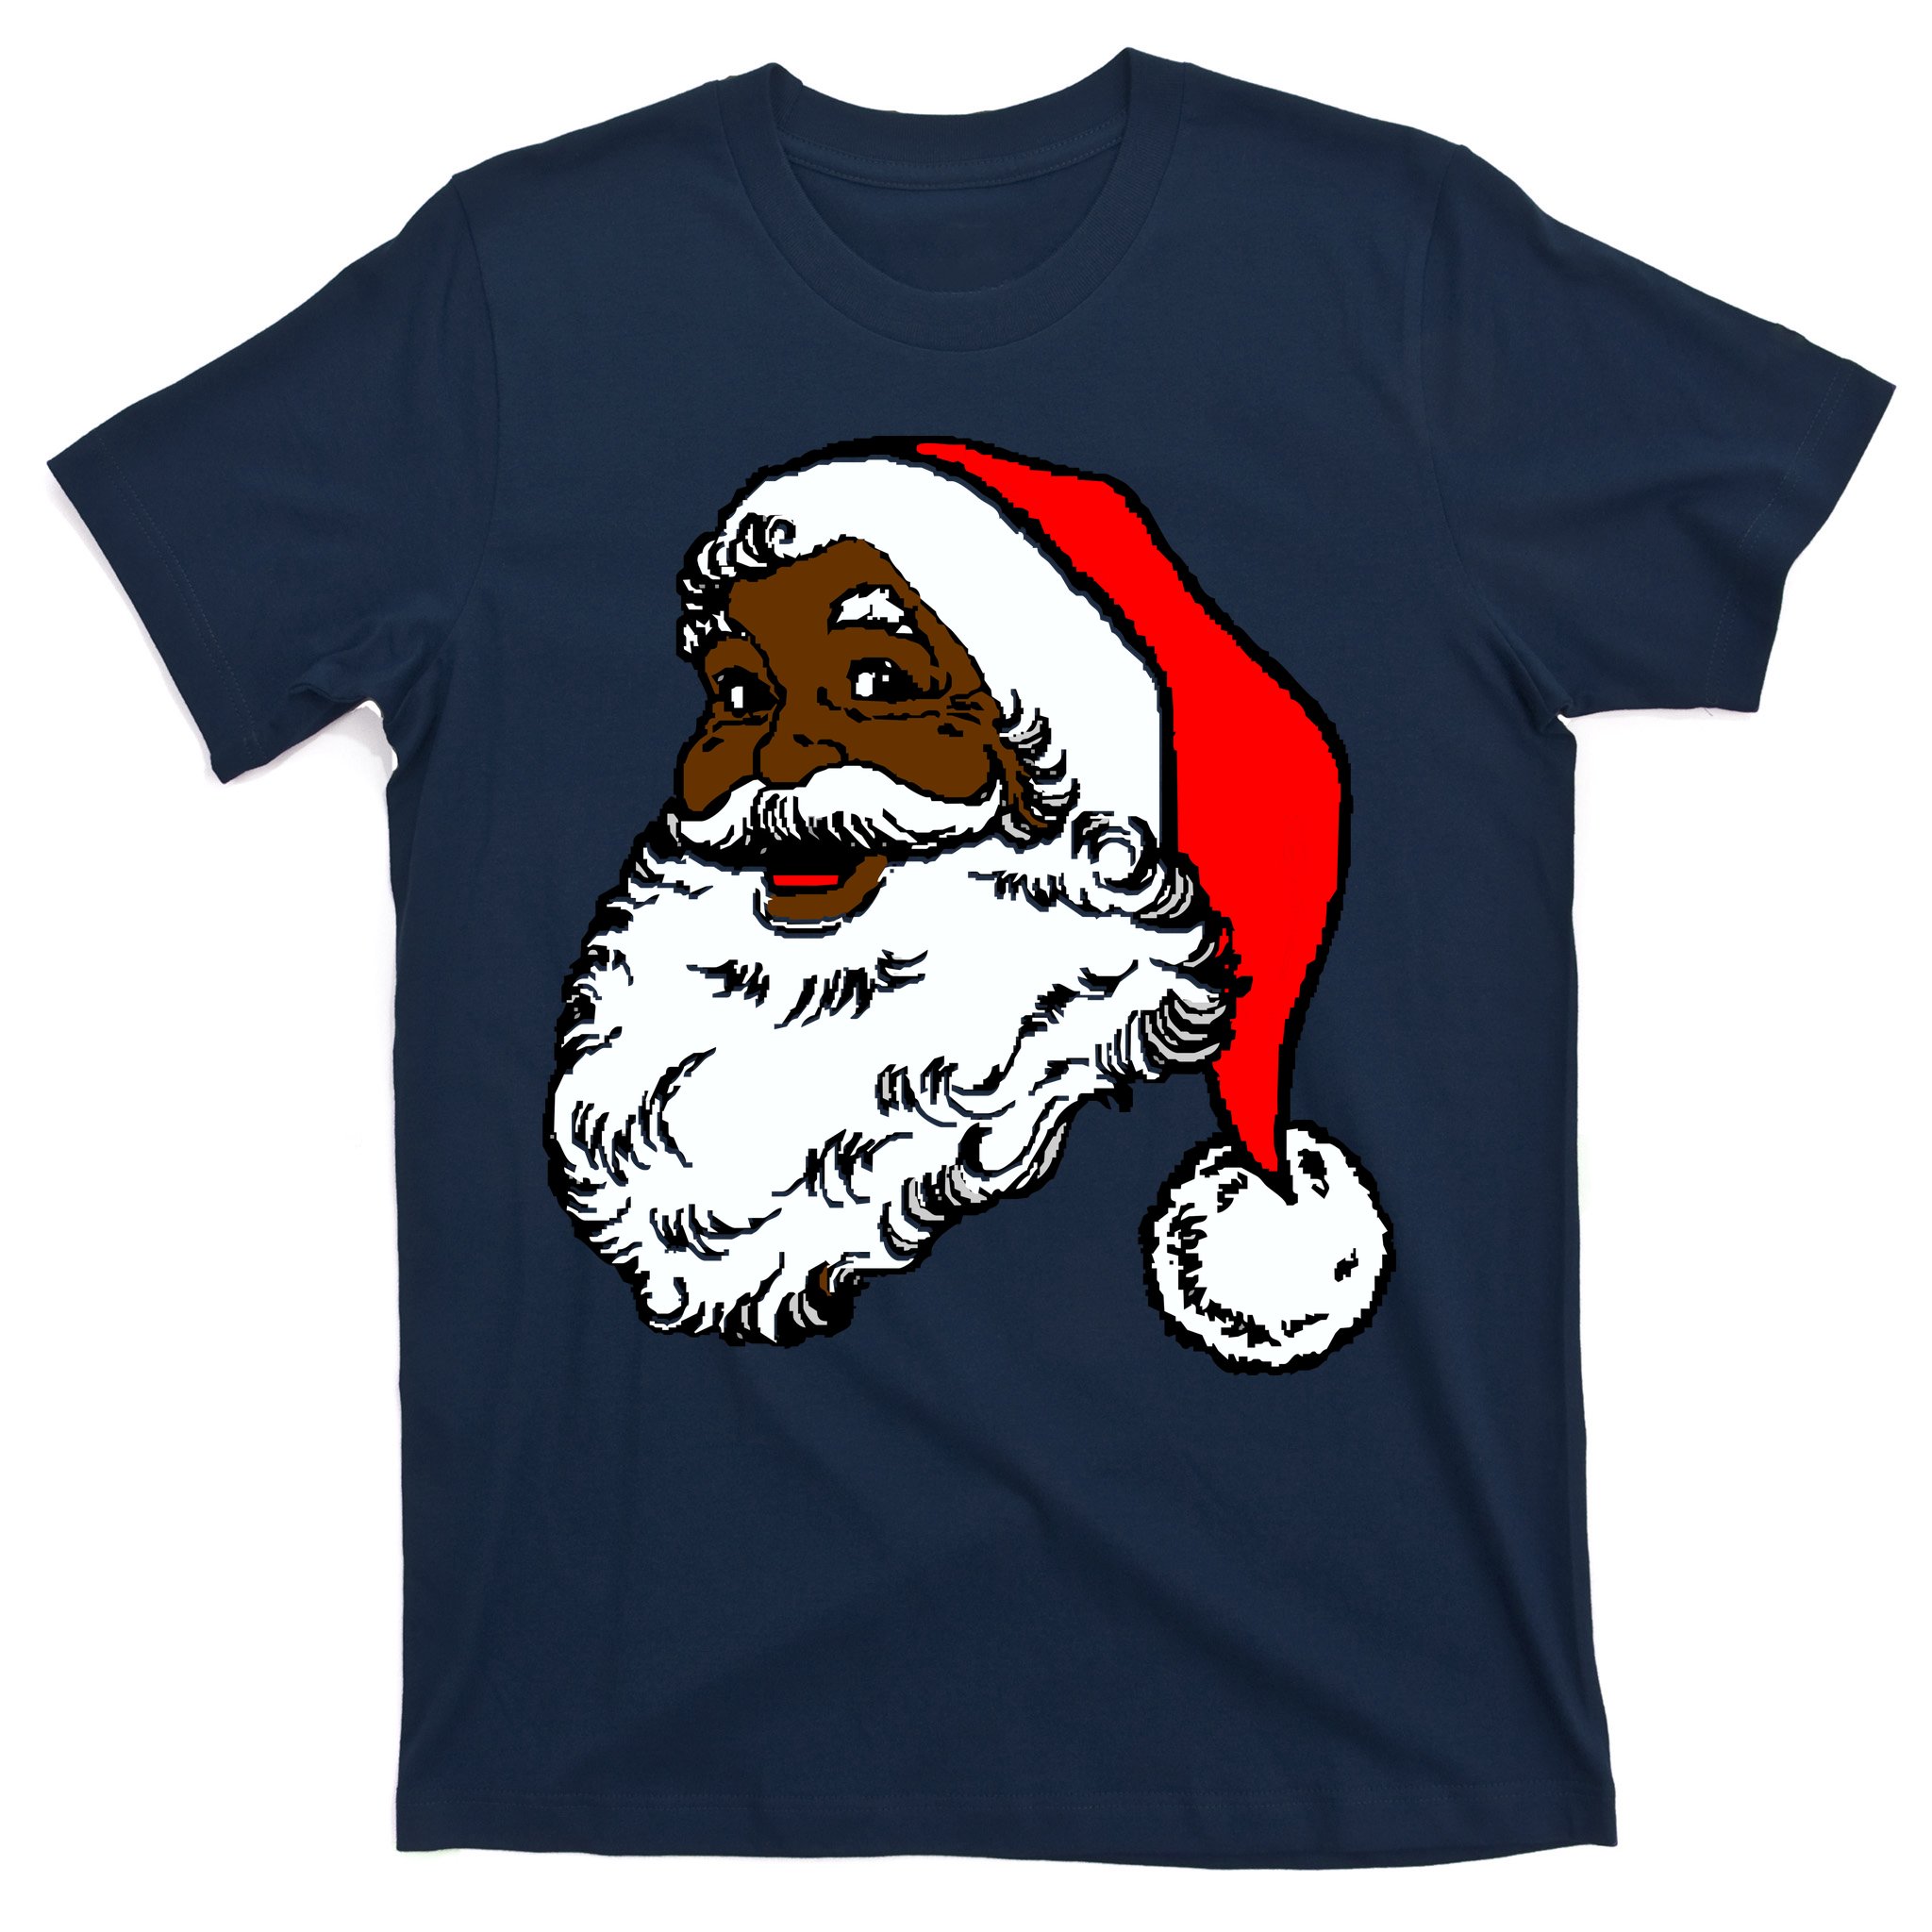 Merry Christmas Snow Ball Shirt Christmas Shirt Shirt with Saying Joy and Cheer Shirt Tee Shirt Graphic tee